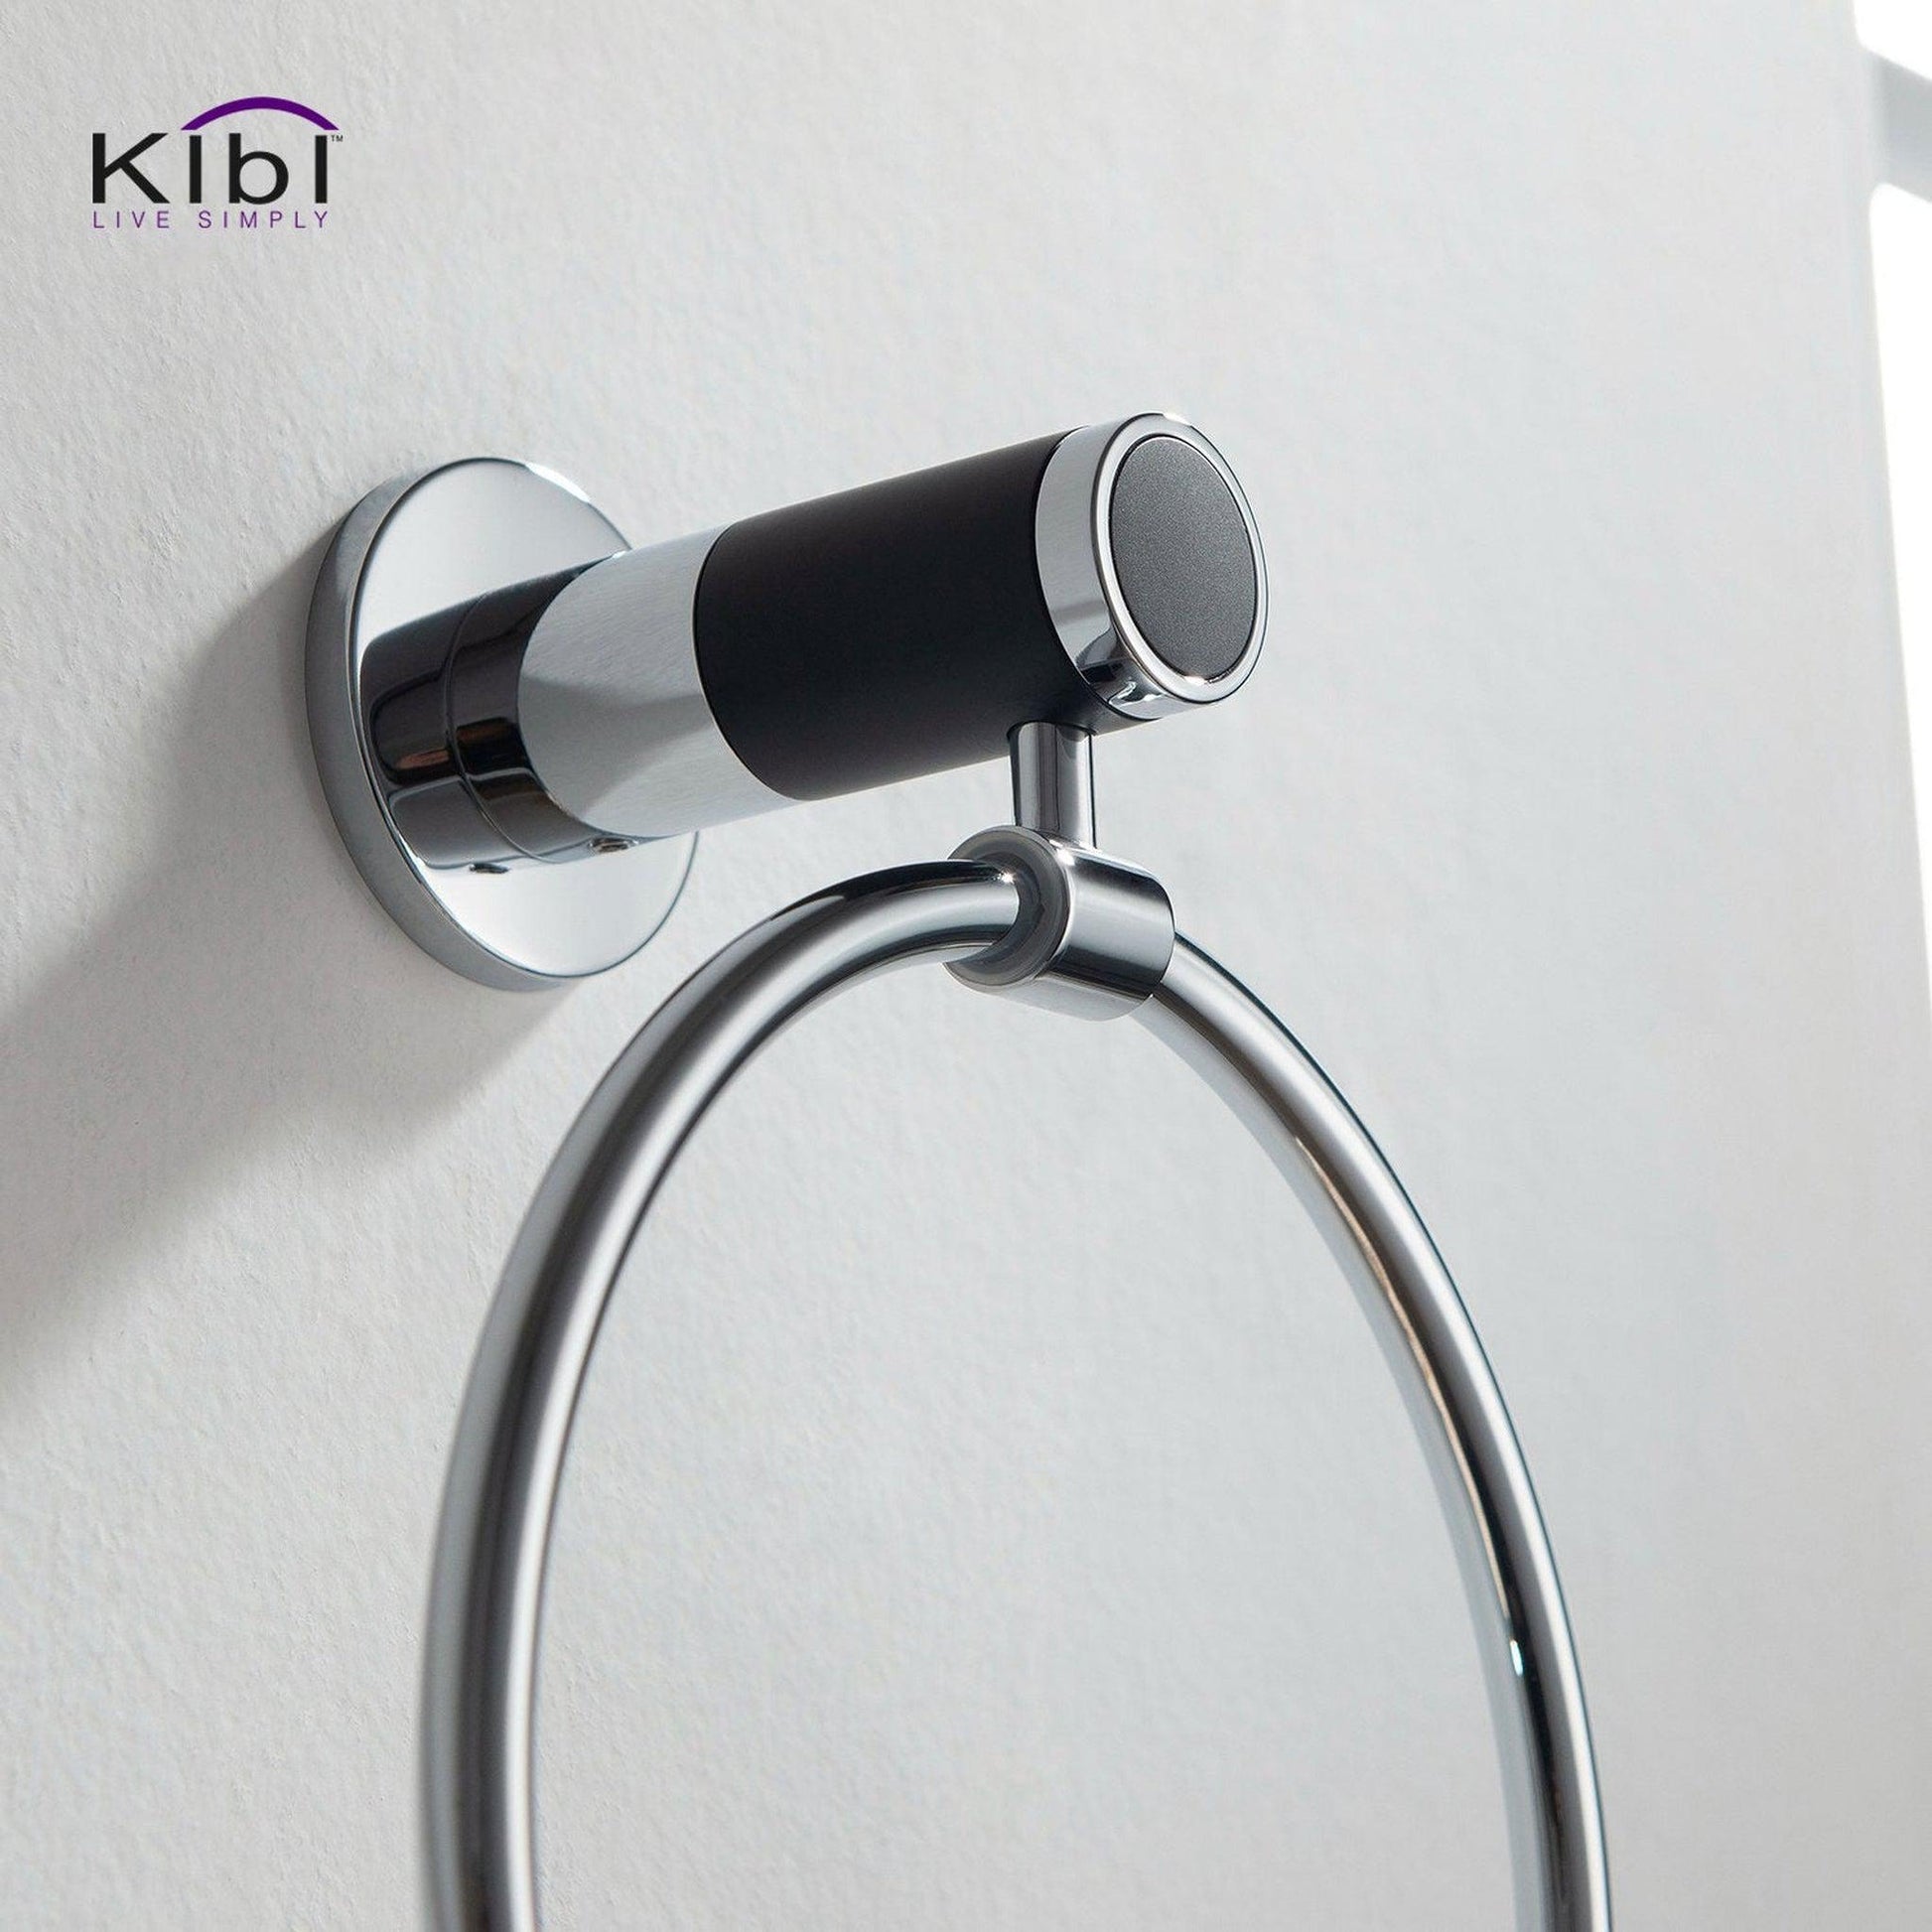 KIBI Abaco Bathroom Towel Ring in Chrome Black Finish